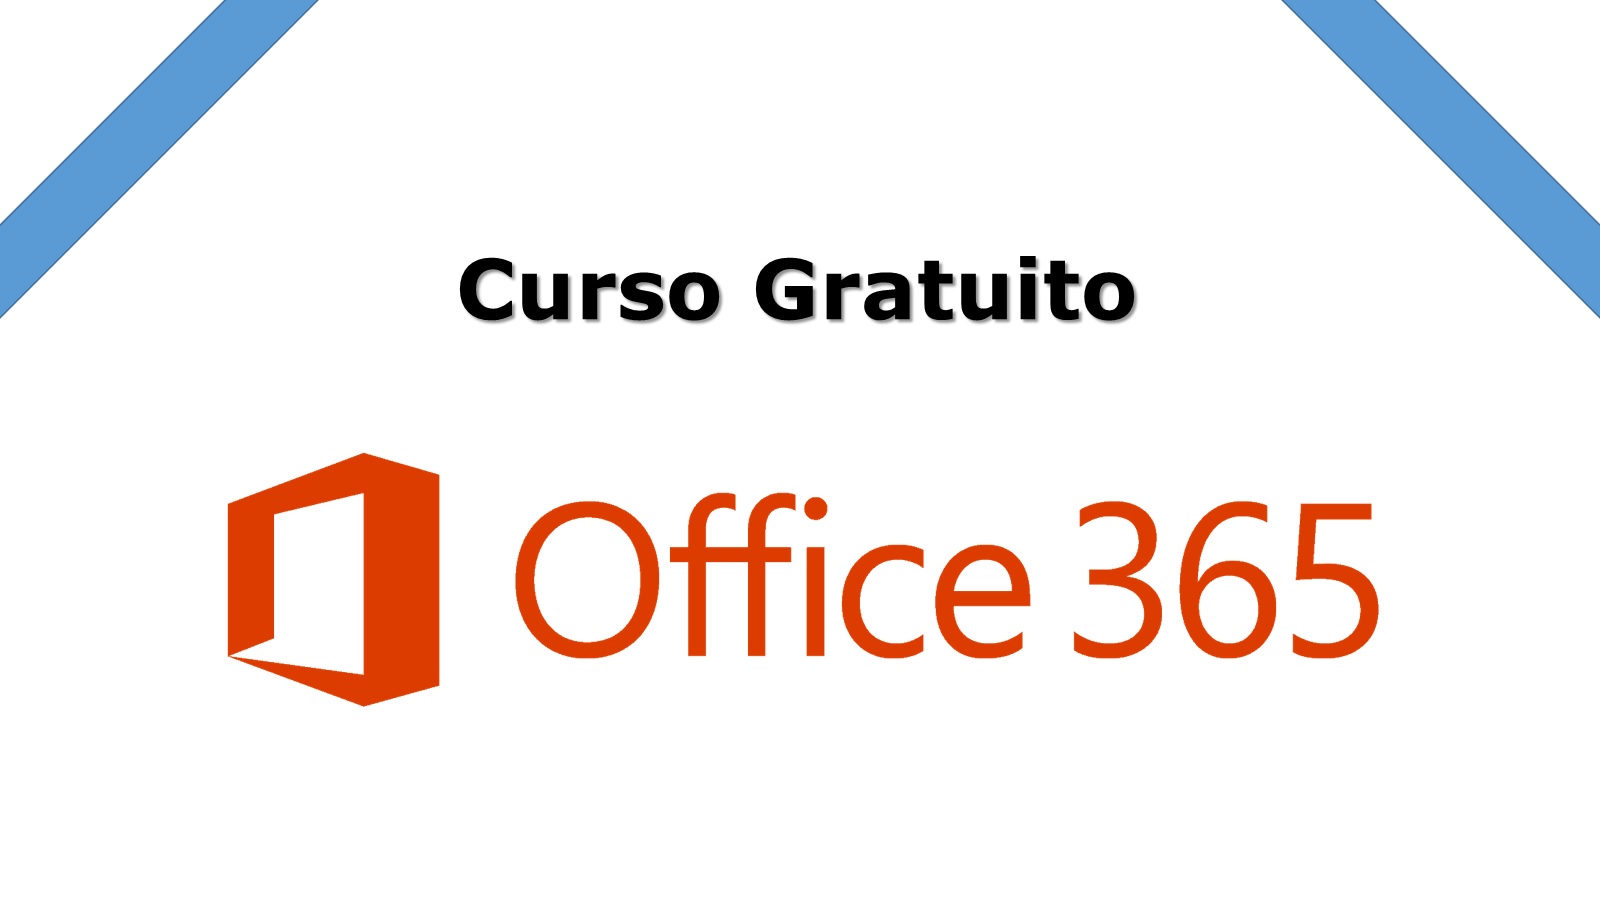 Curso Gratuito: Introducción al Office 365 - Facialix